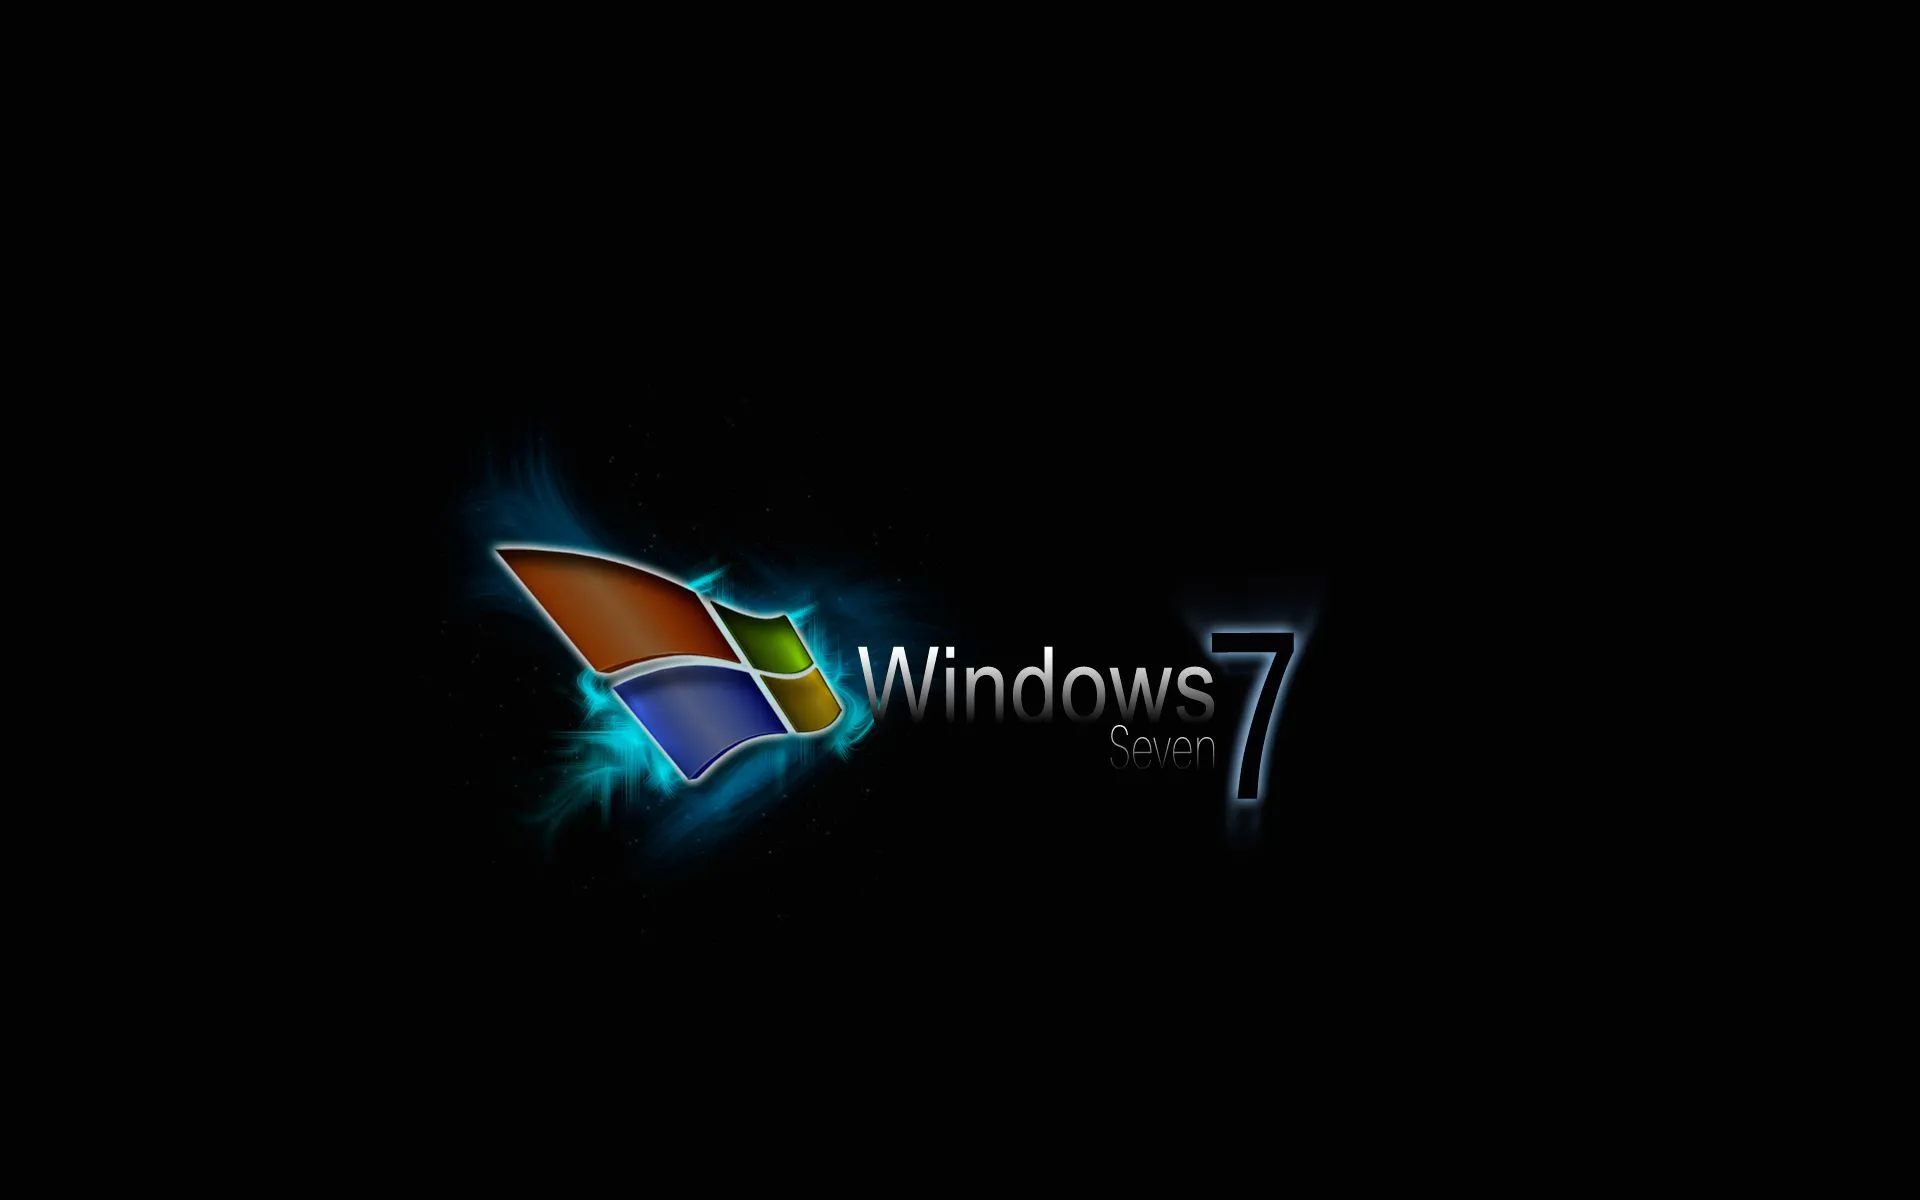 Fondos De Pantalla Windows XP,7 y otros - Taringa!